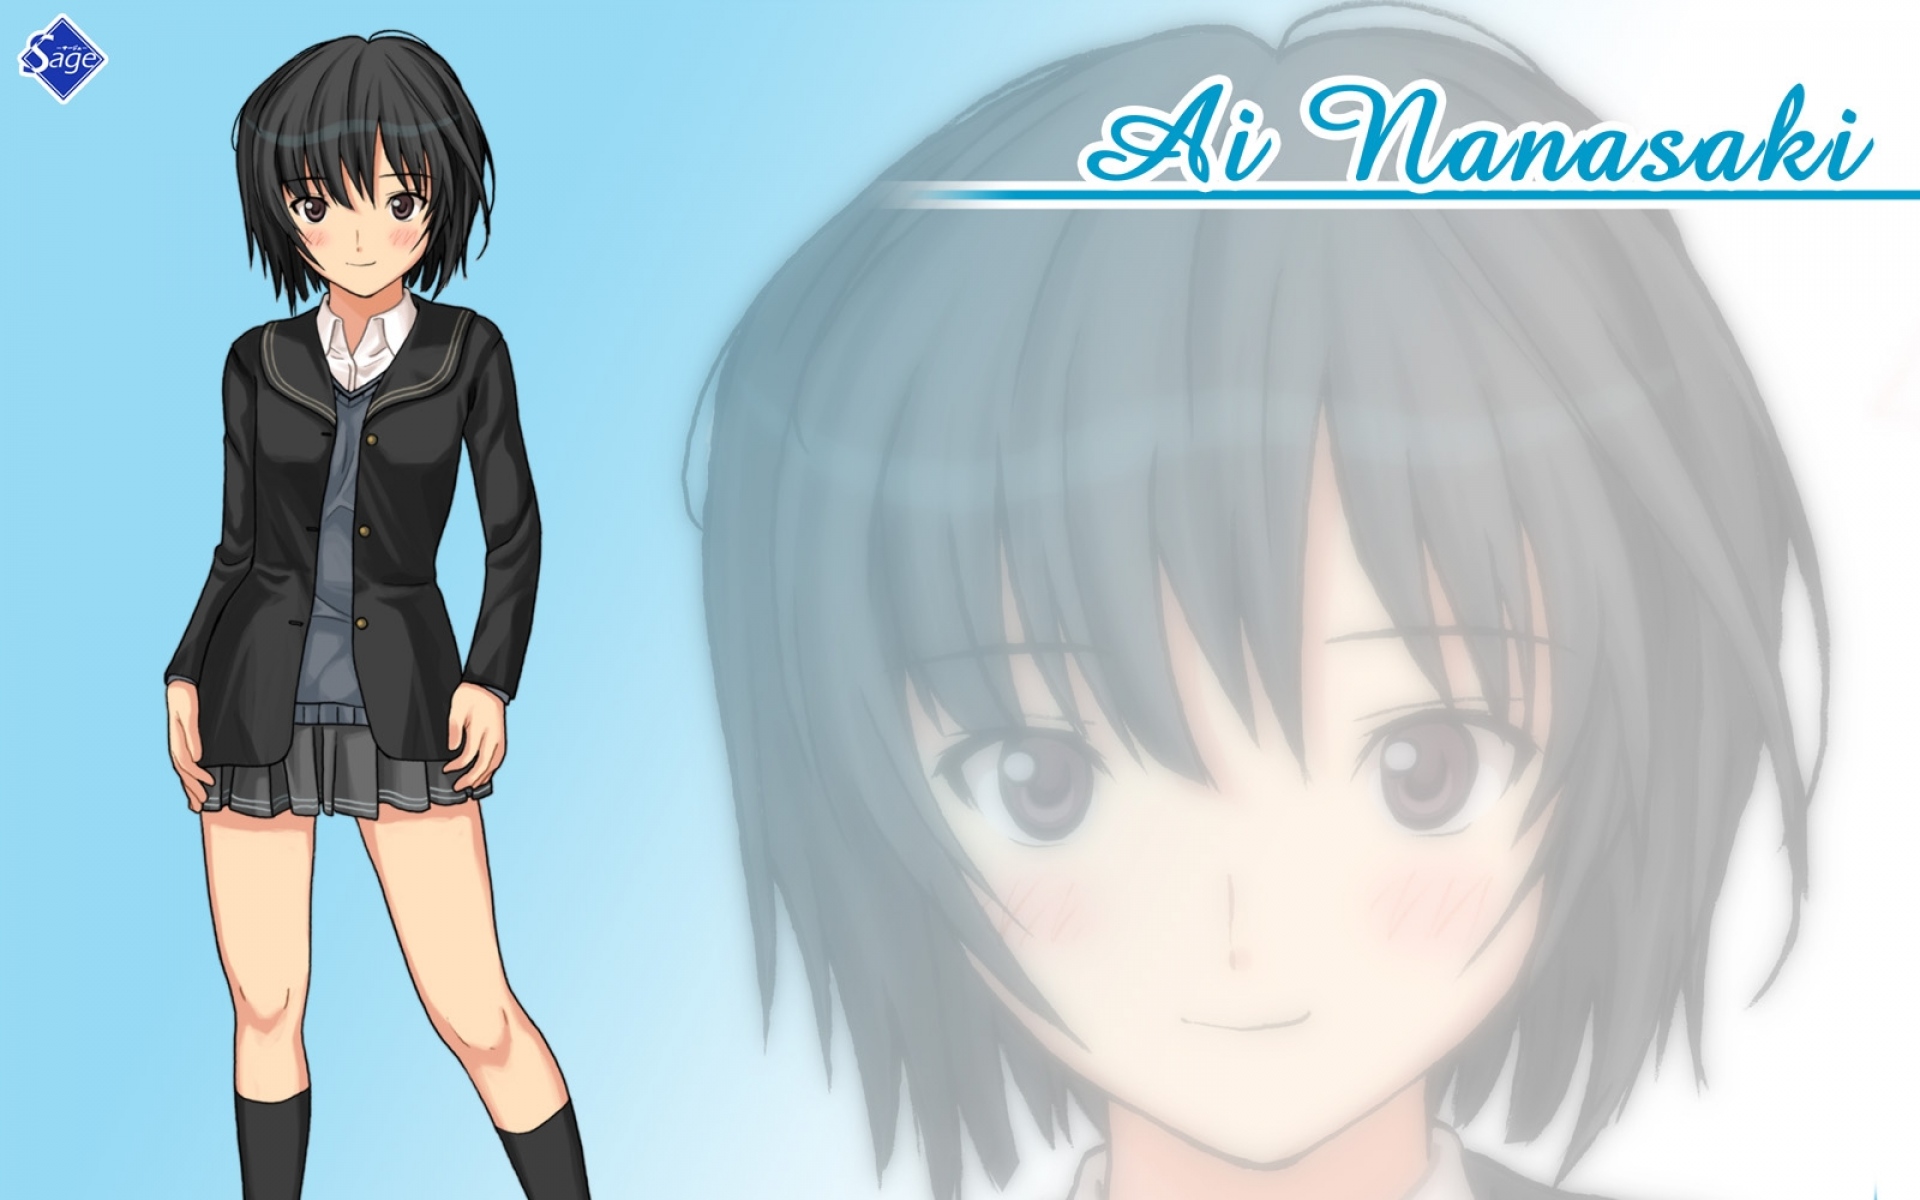 Картинки Amagami, nanasaki ai, девушка, брюнетка, пальто, улыбка фото и обои на рабочий стол